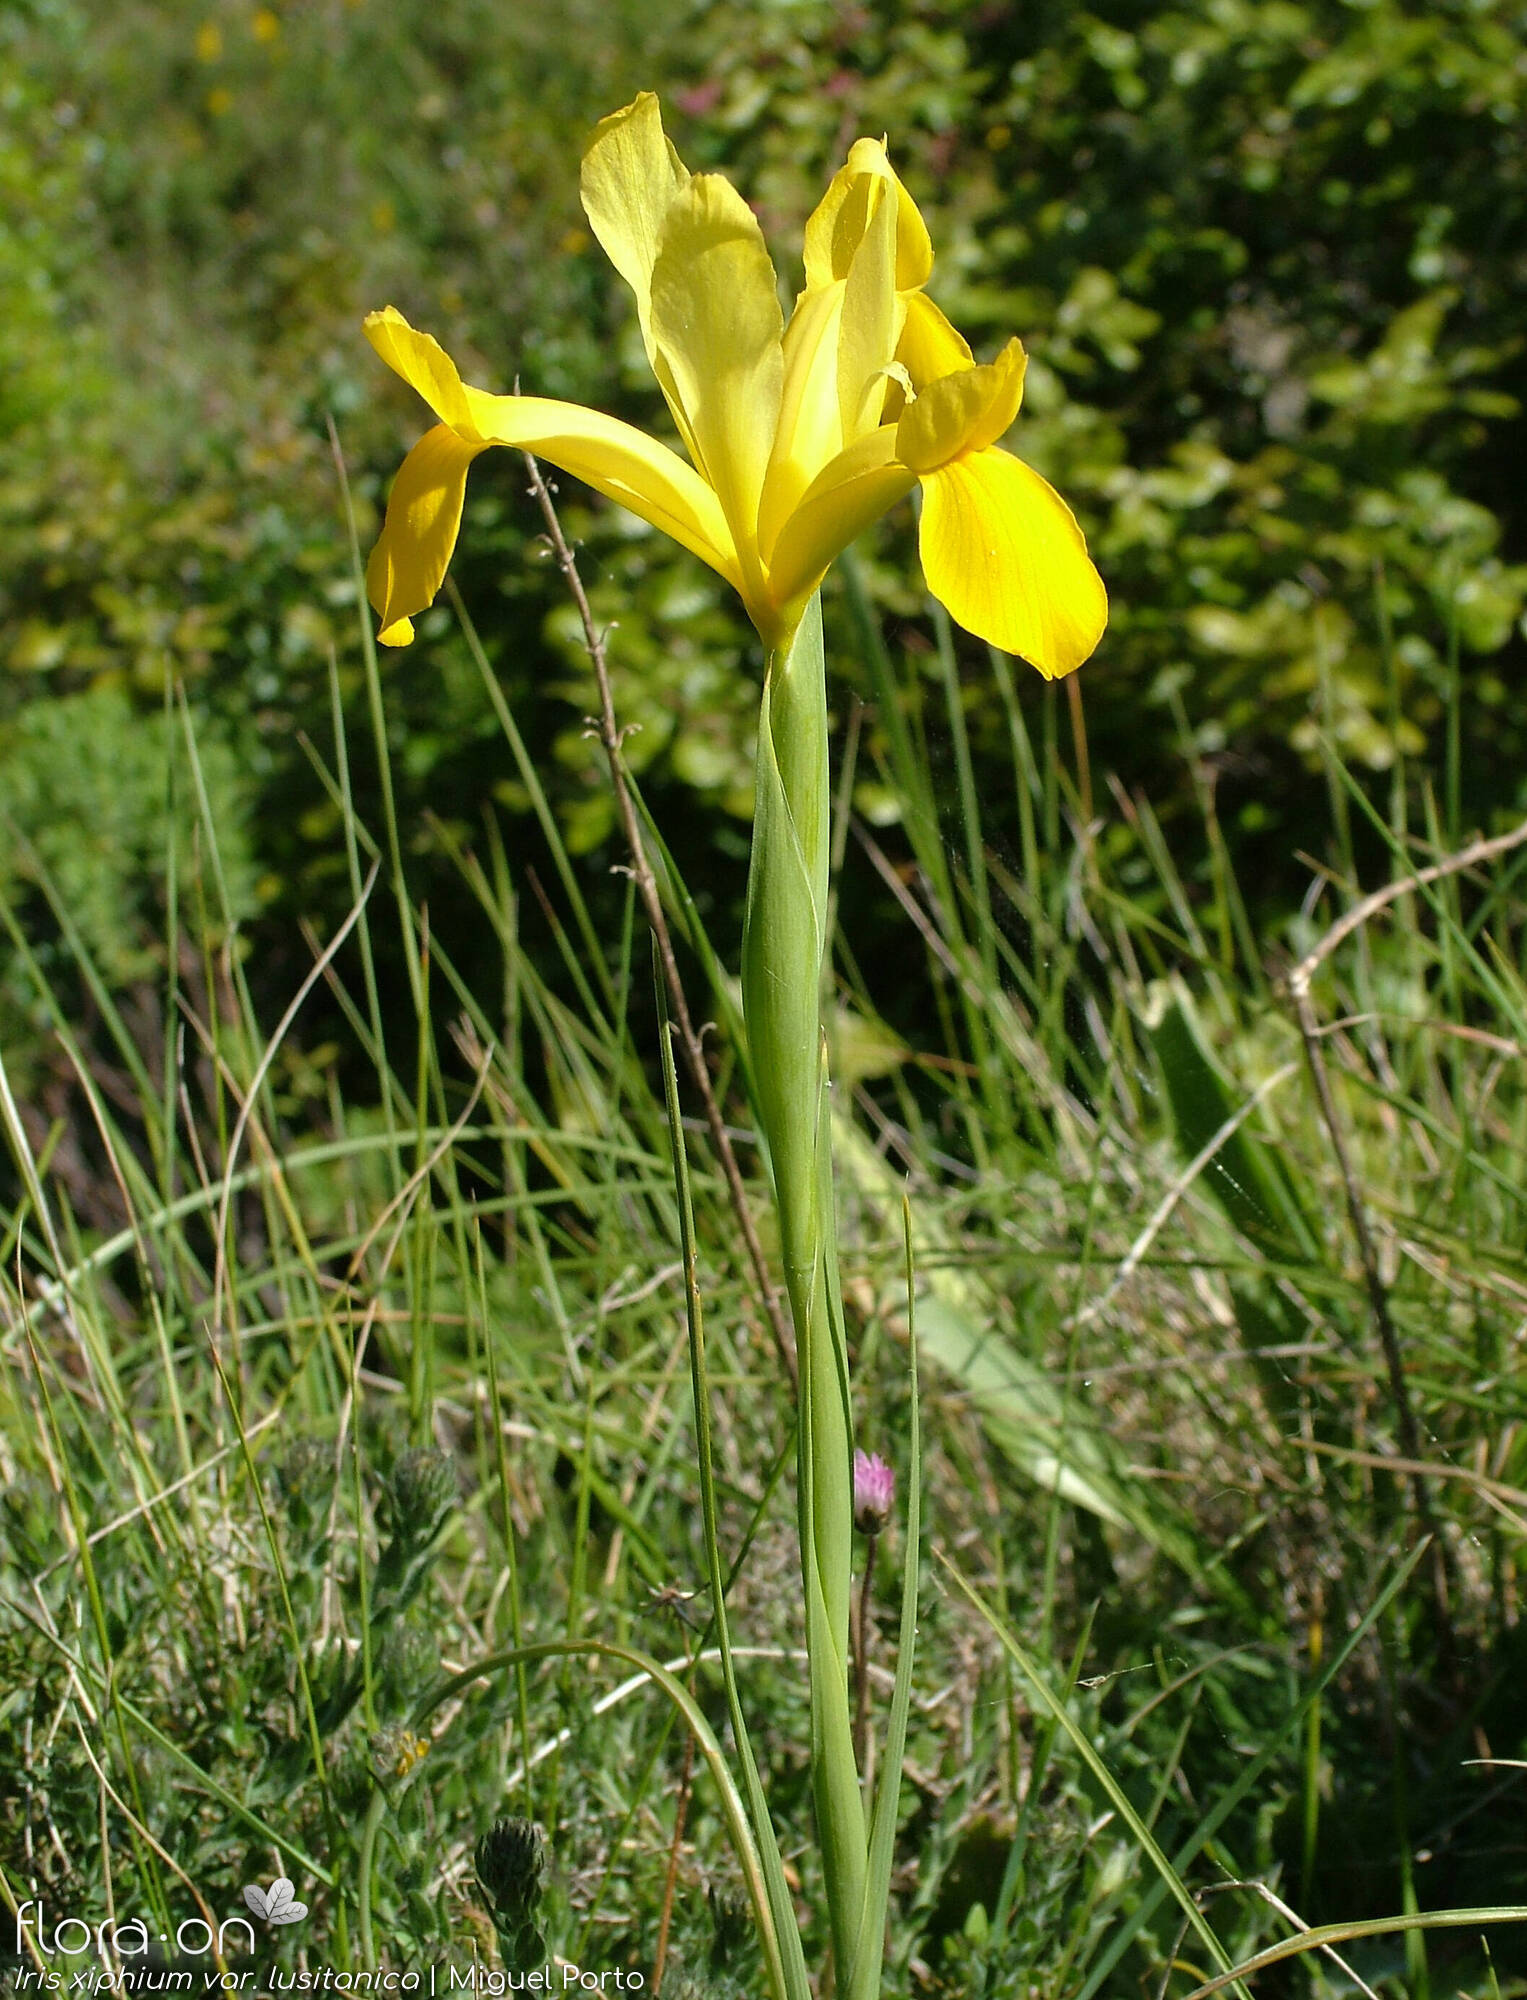 Iris xiphium - Flor (geral) | Miguel Porto; CC BY-NC 4.0